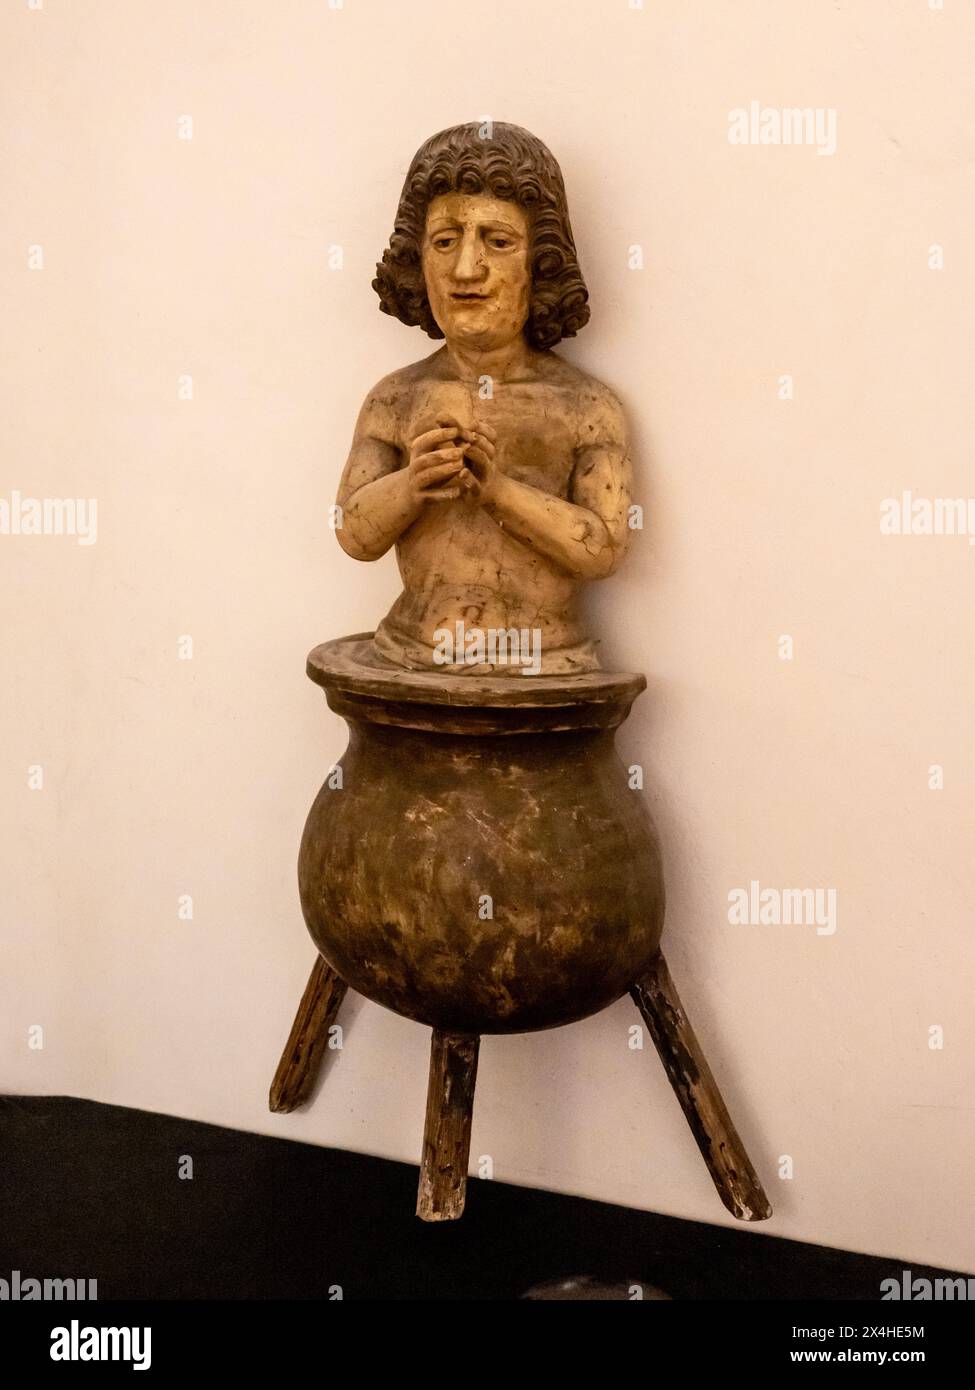 St Vitus in boiling kettle, Burg Meersburg, Old Casltle Germany Stock Photo